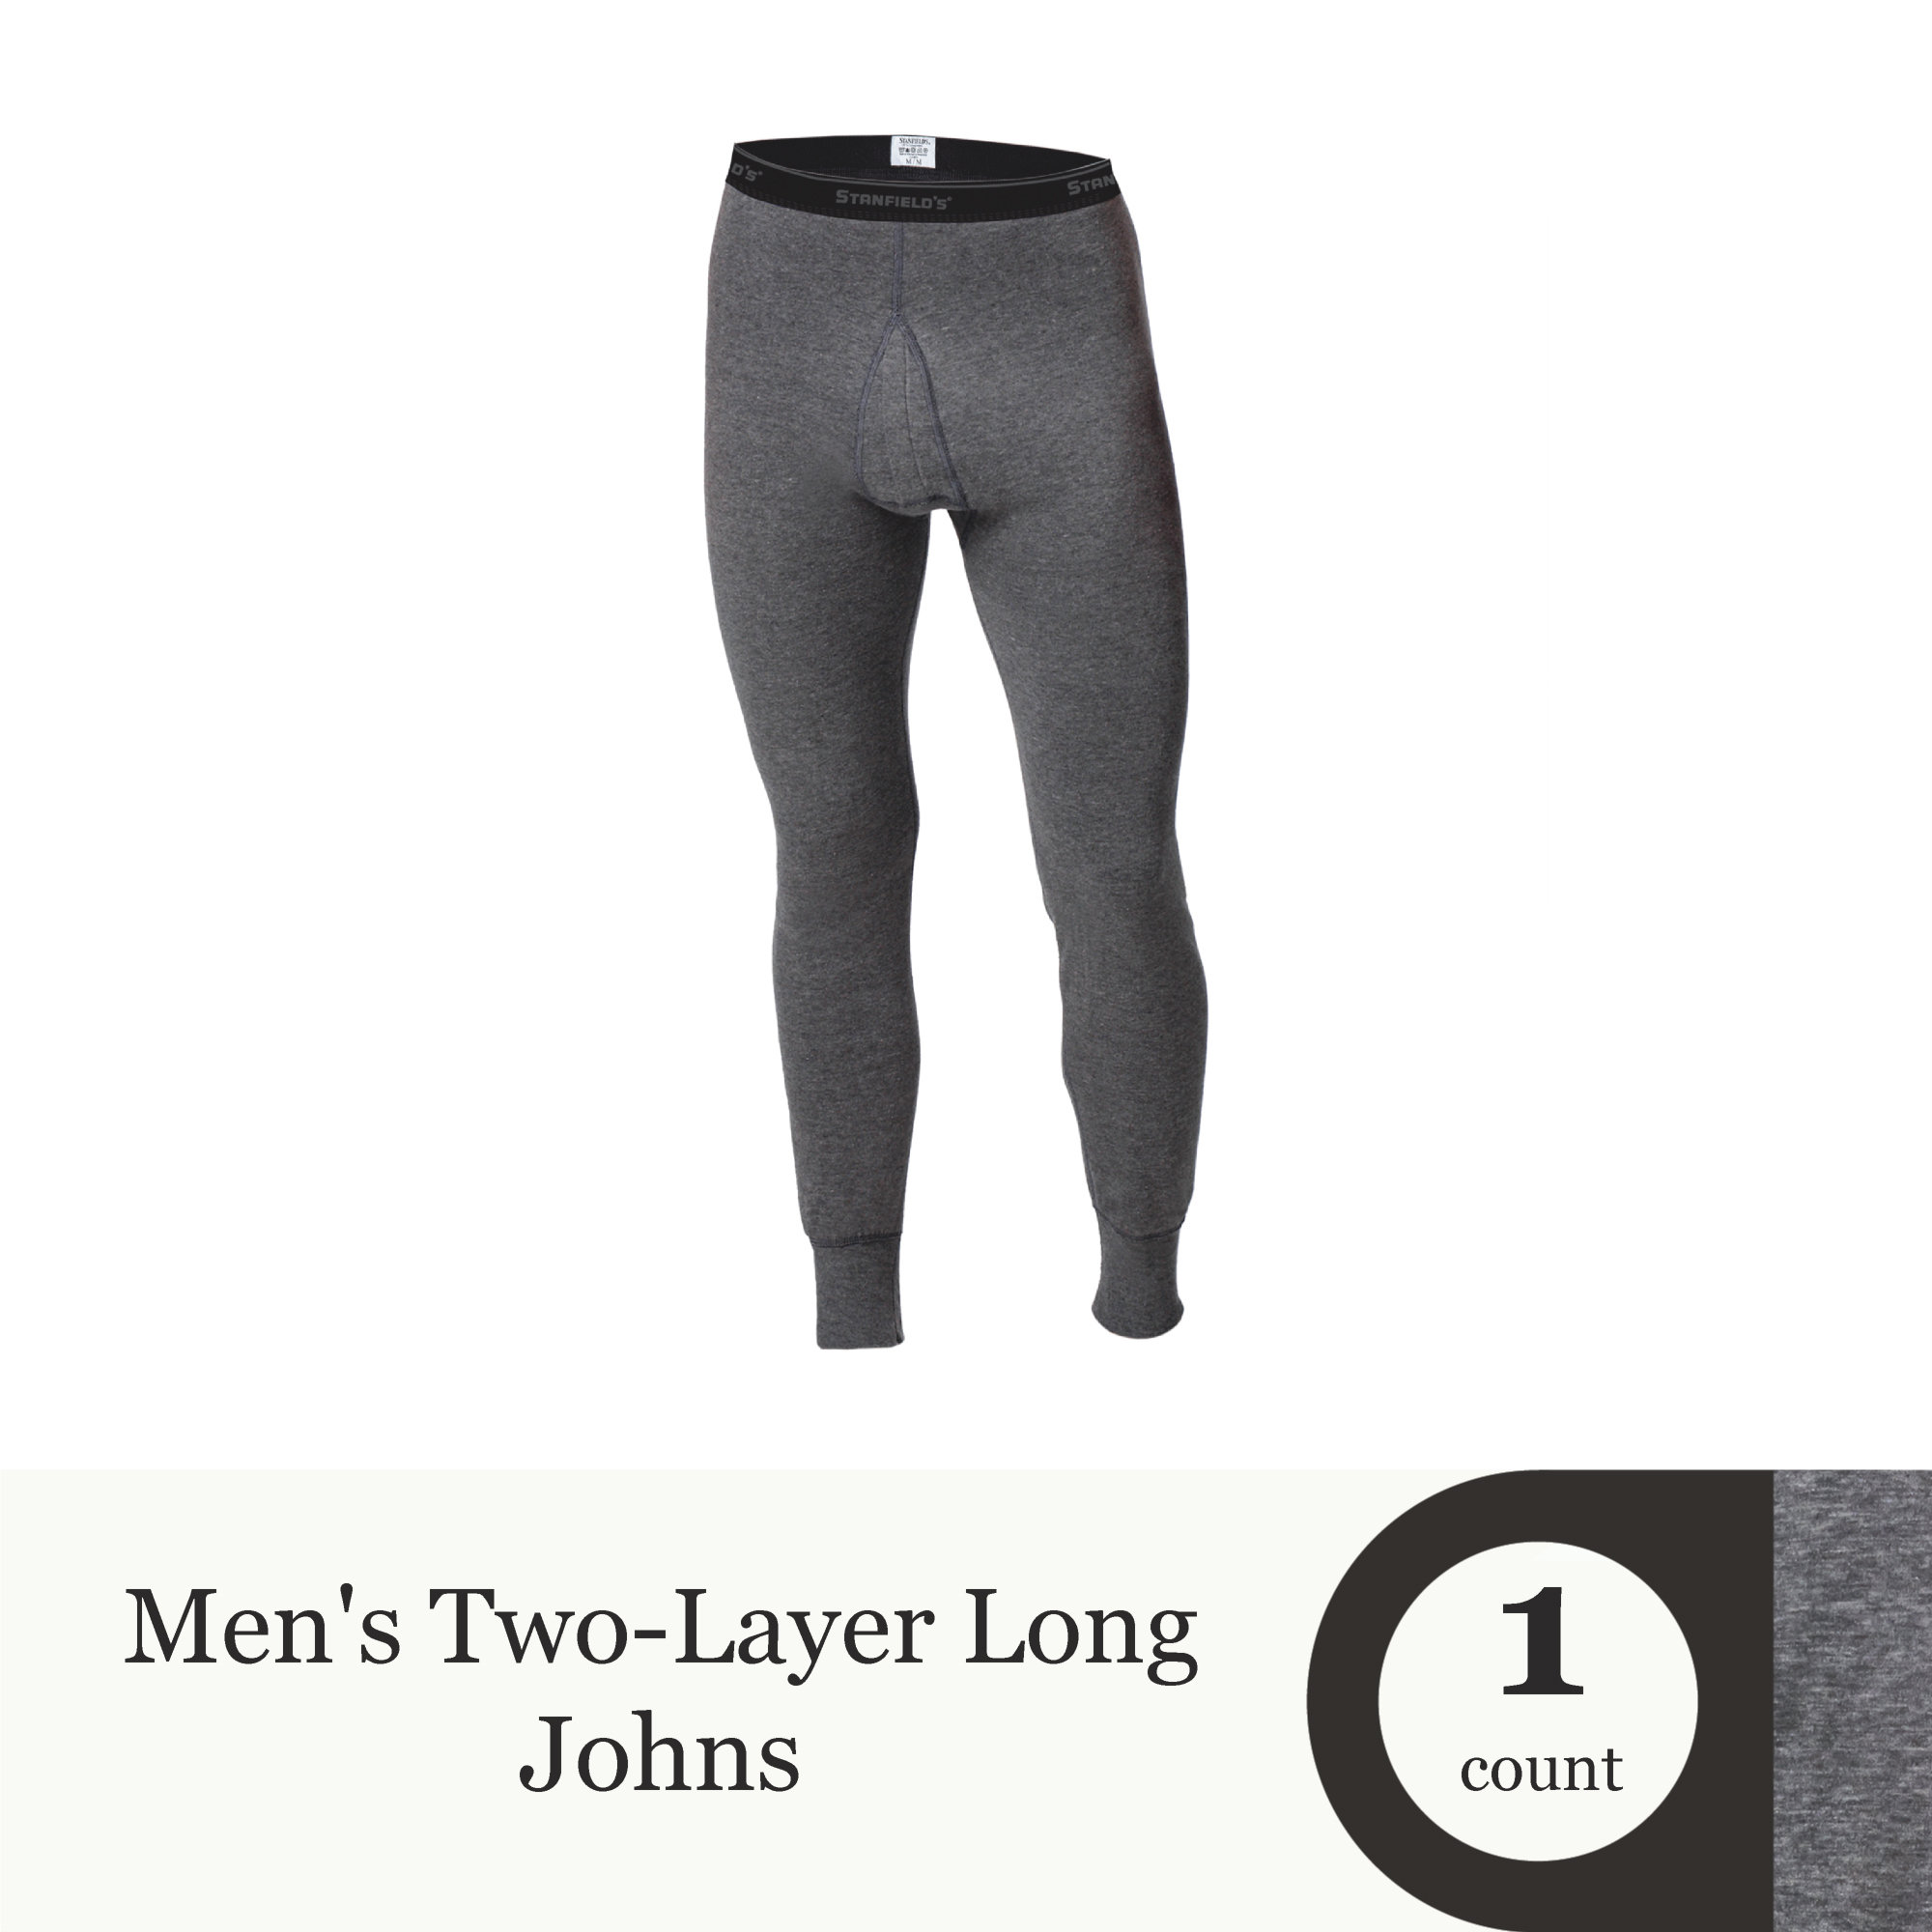 Stanfield's Men's 2 Layer Long John Base Layer Pants